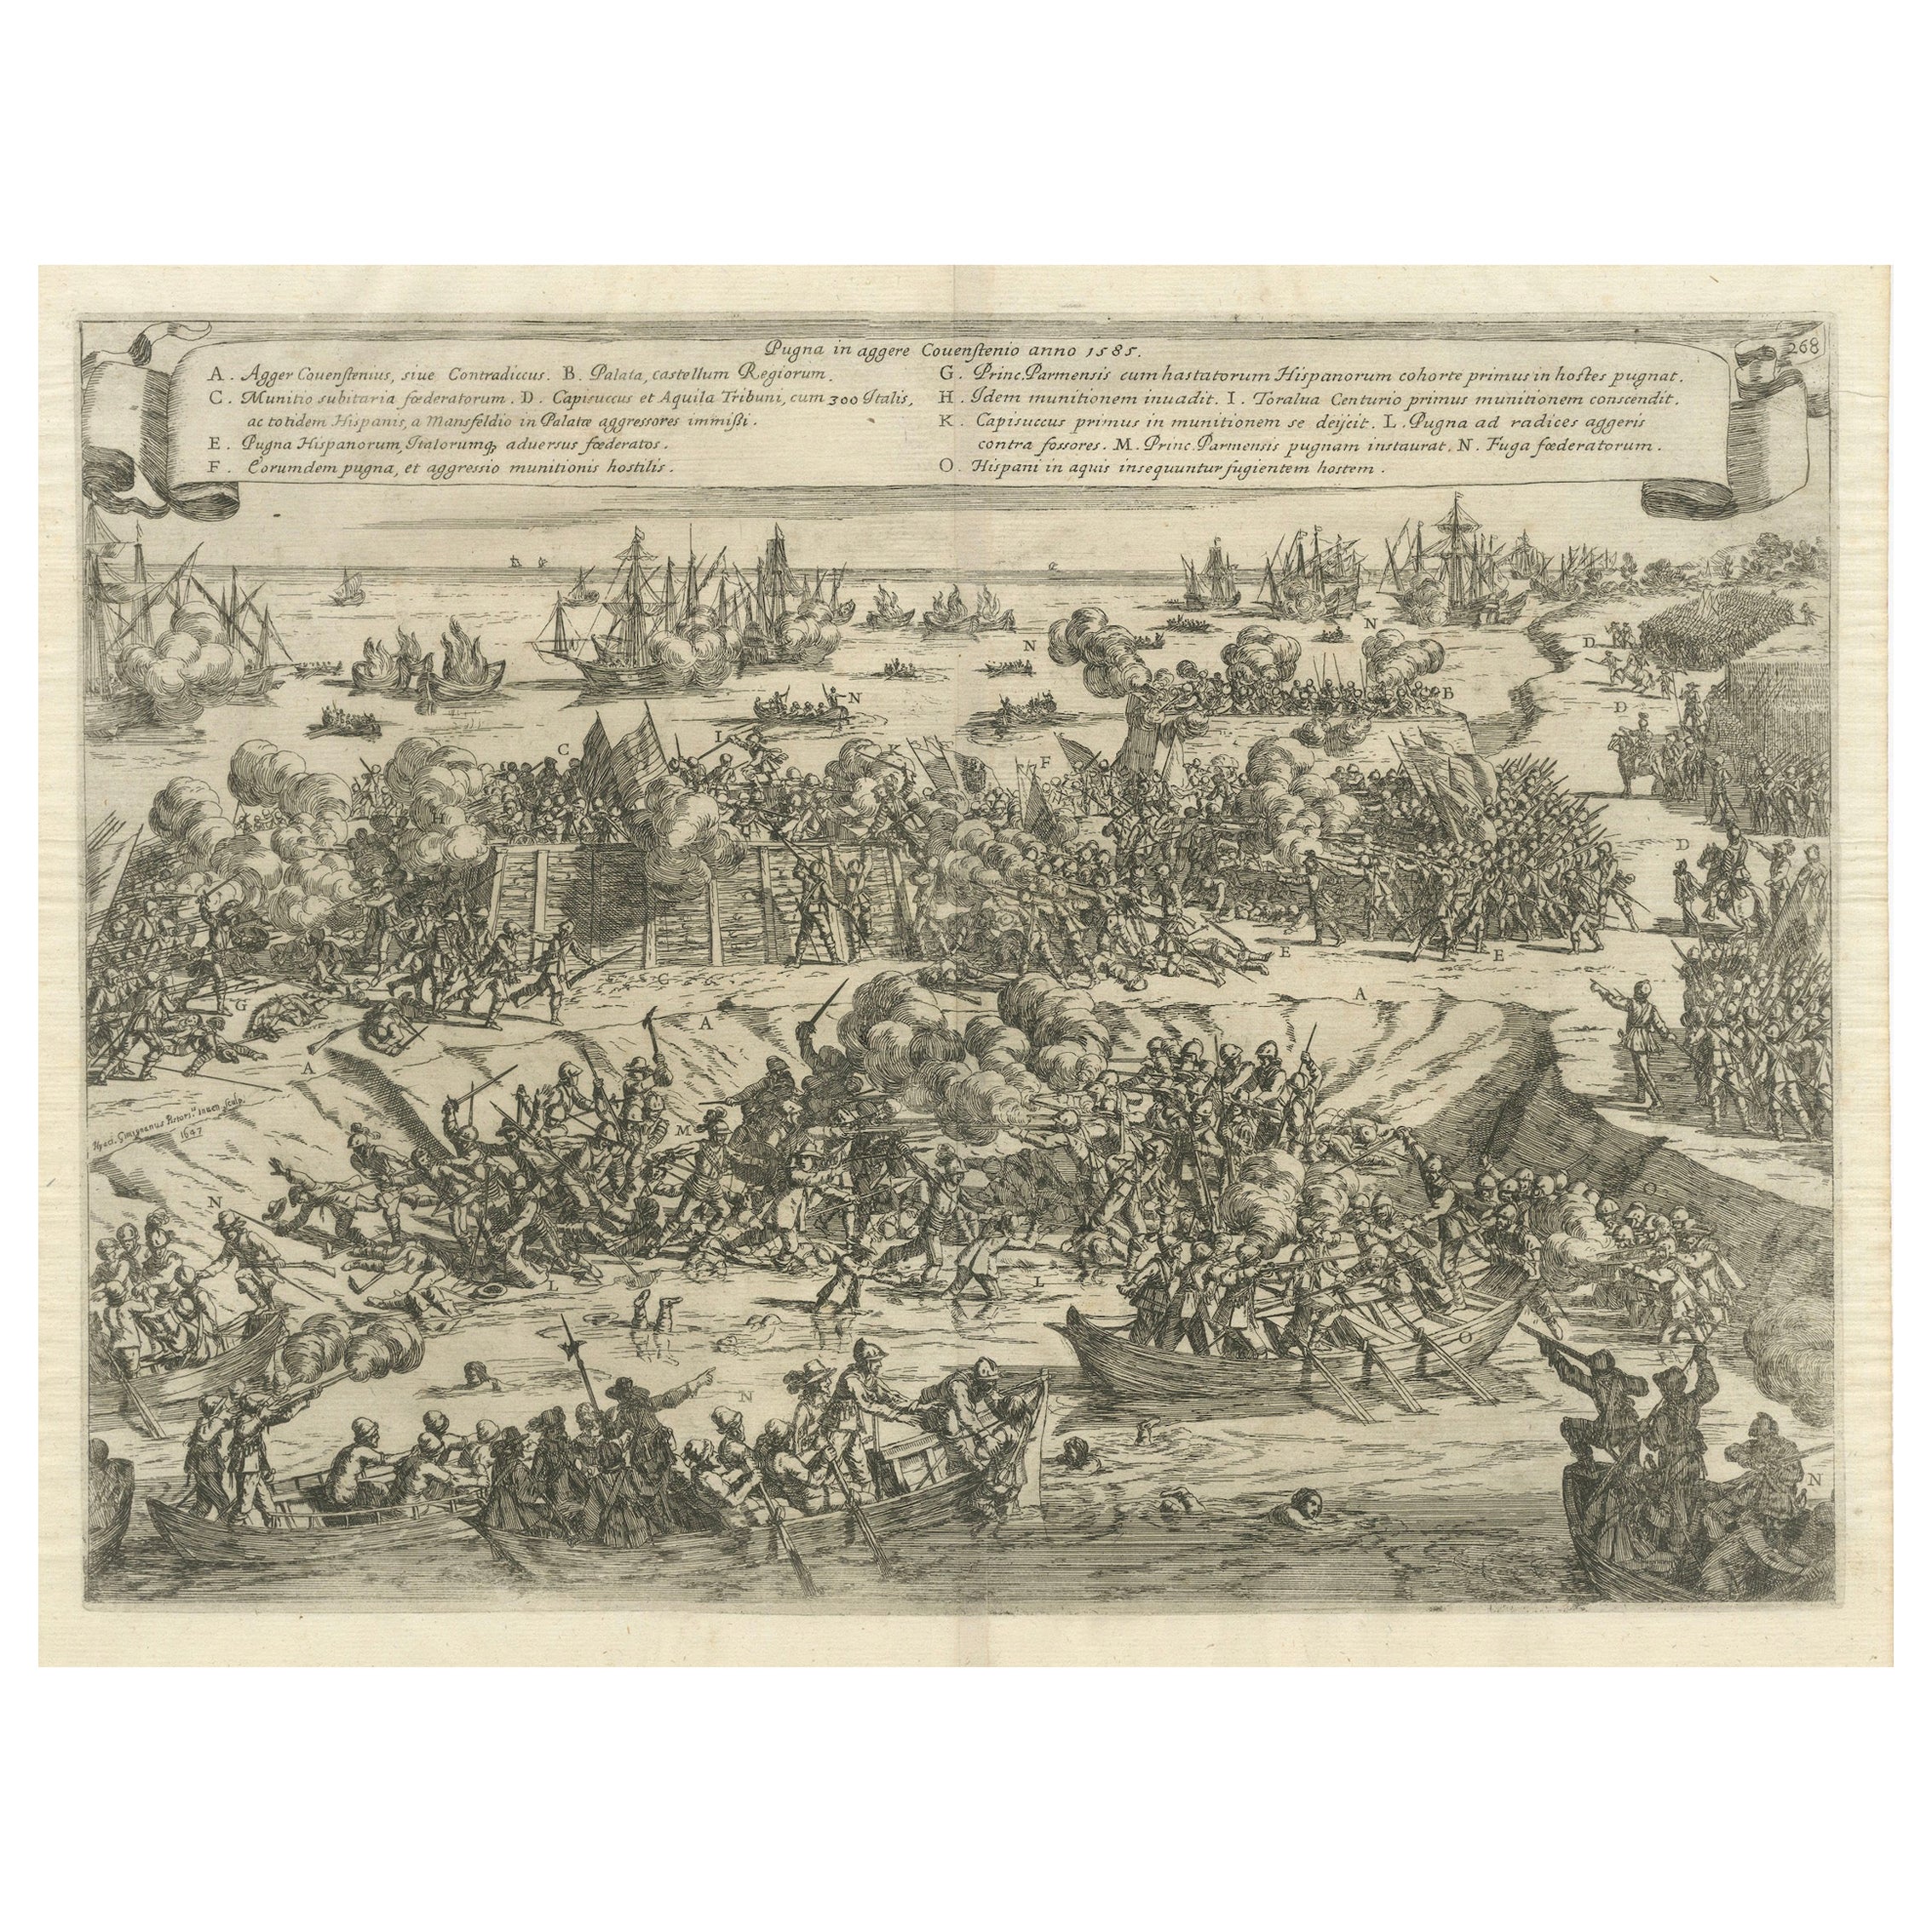 Siege und Struggle: The Kauwensteinse Dike in the Eighty Years' War, 1647